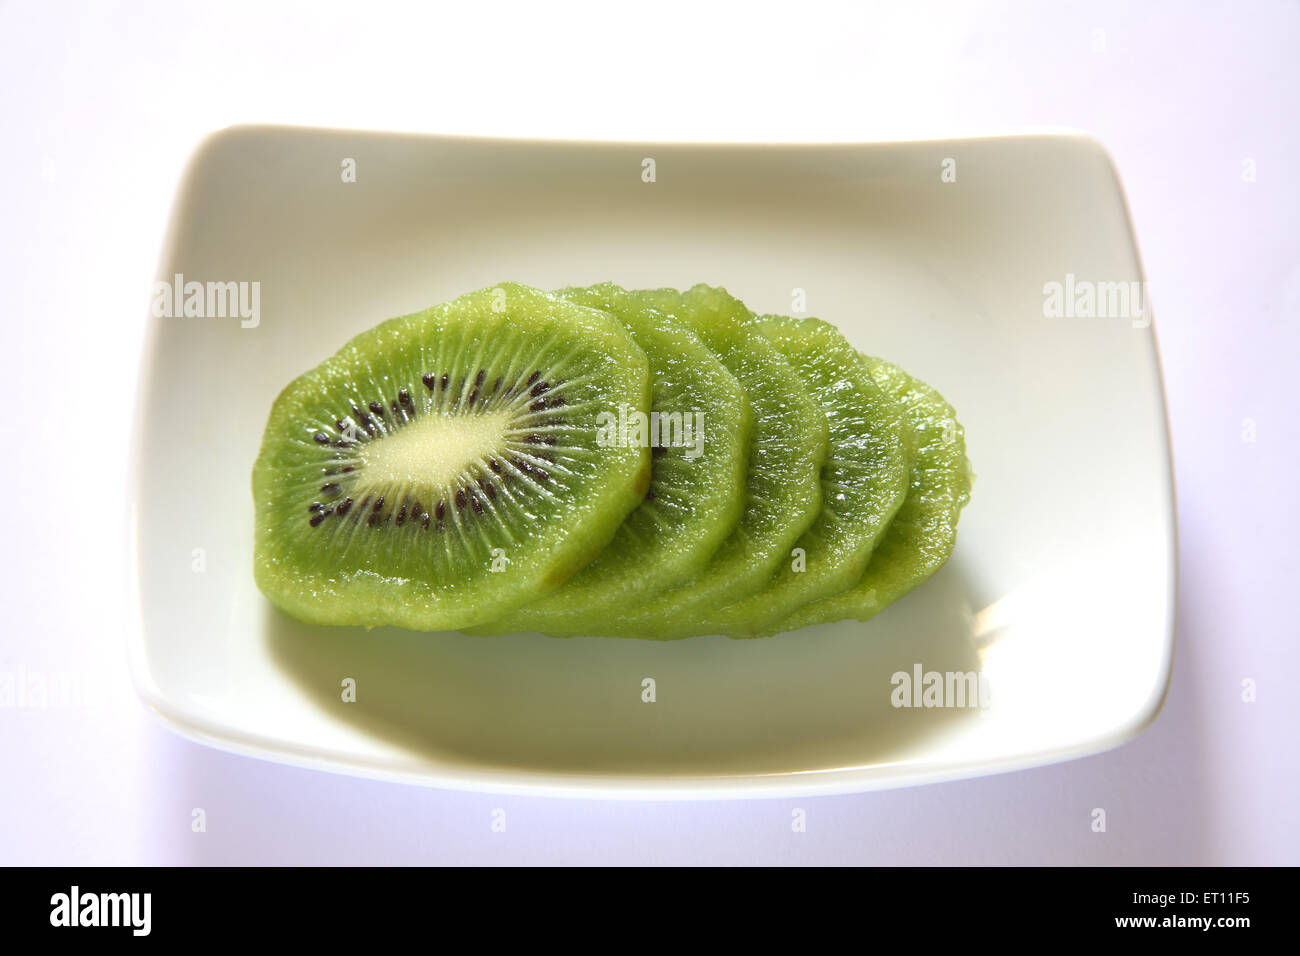 Fruit, tranches de kiwi dans le bac sur fond blanc Banque D'Images